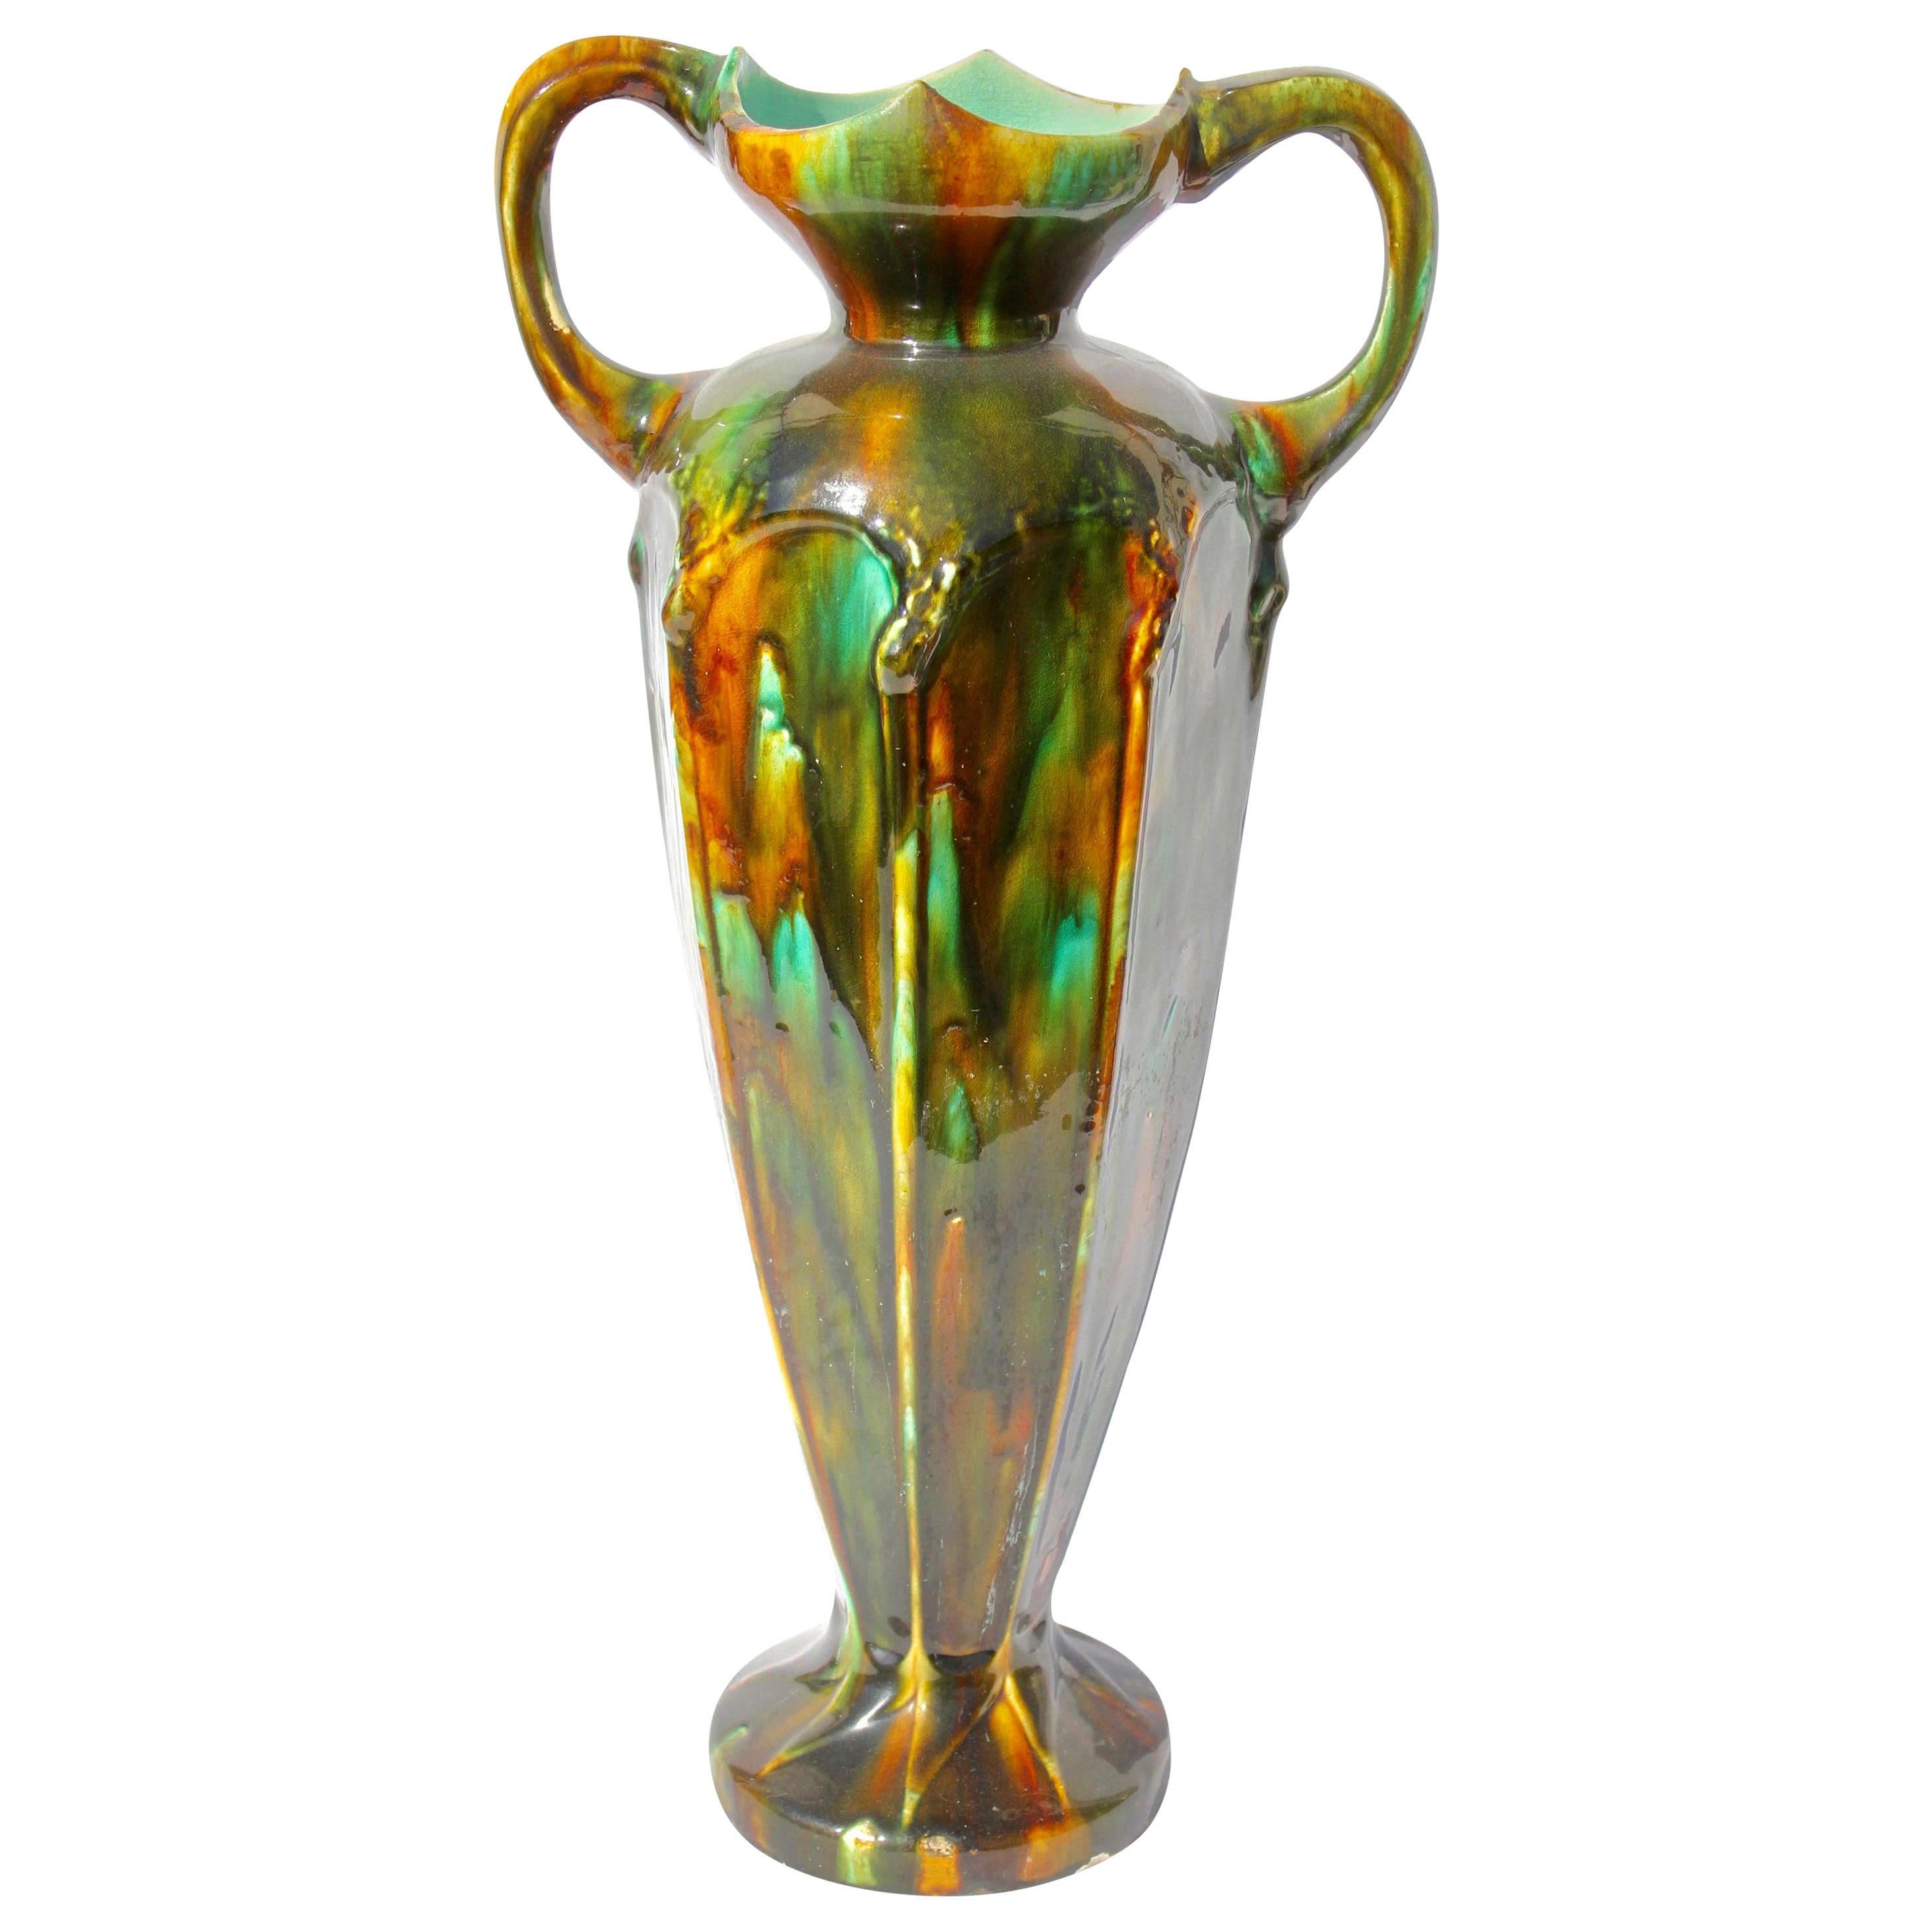 Art Nouveau Period Arts & Crafts Monumental Ceramic Floor Vase